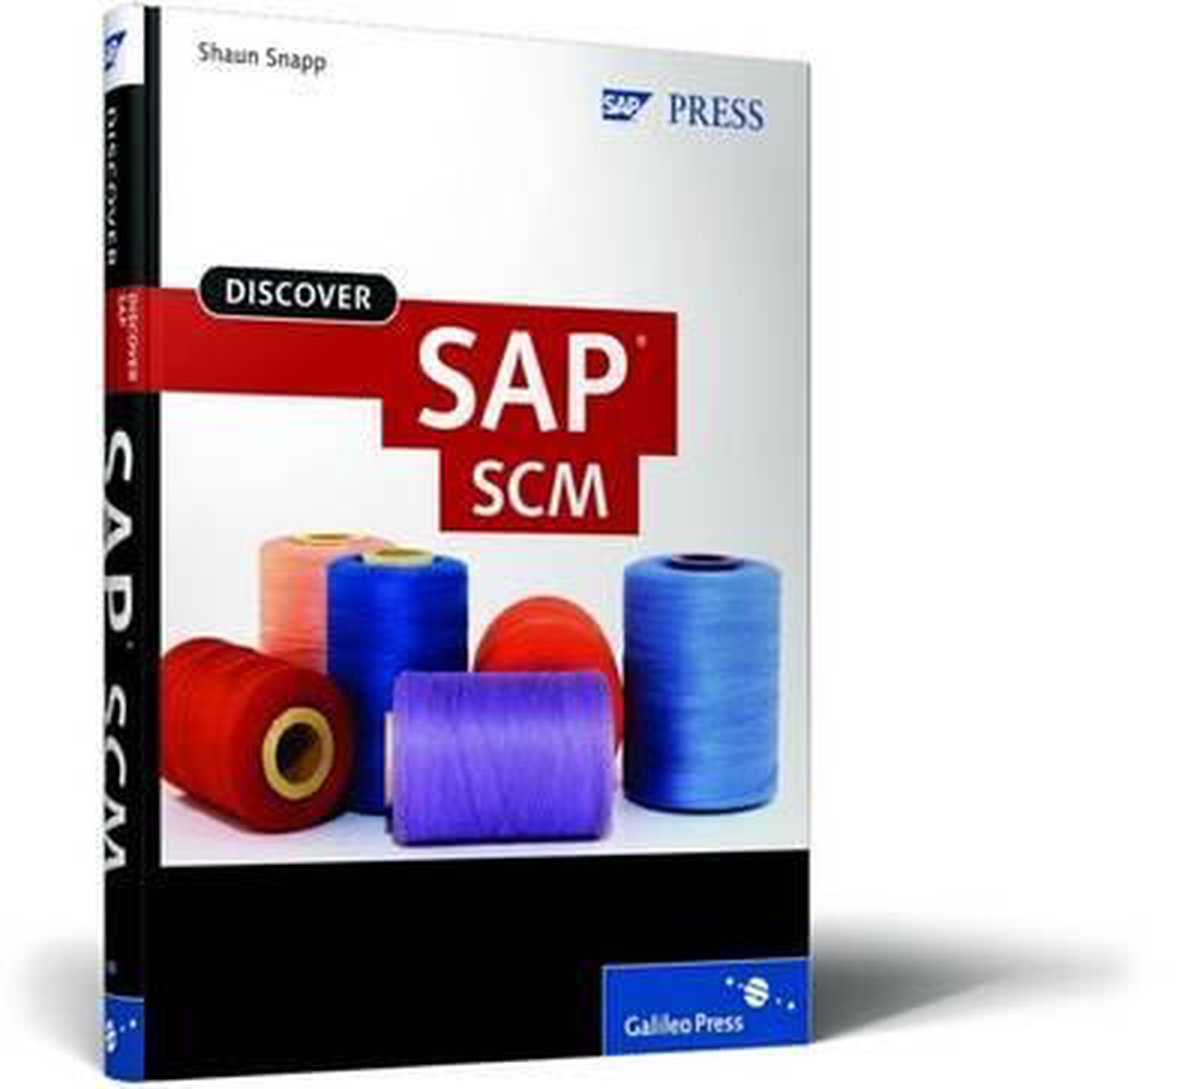 Discover SAP SCM